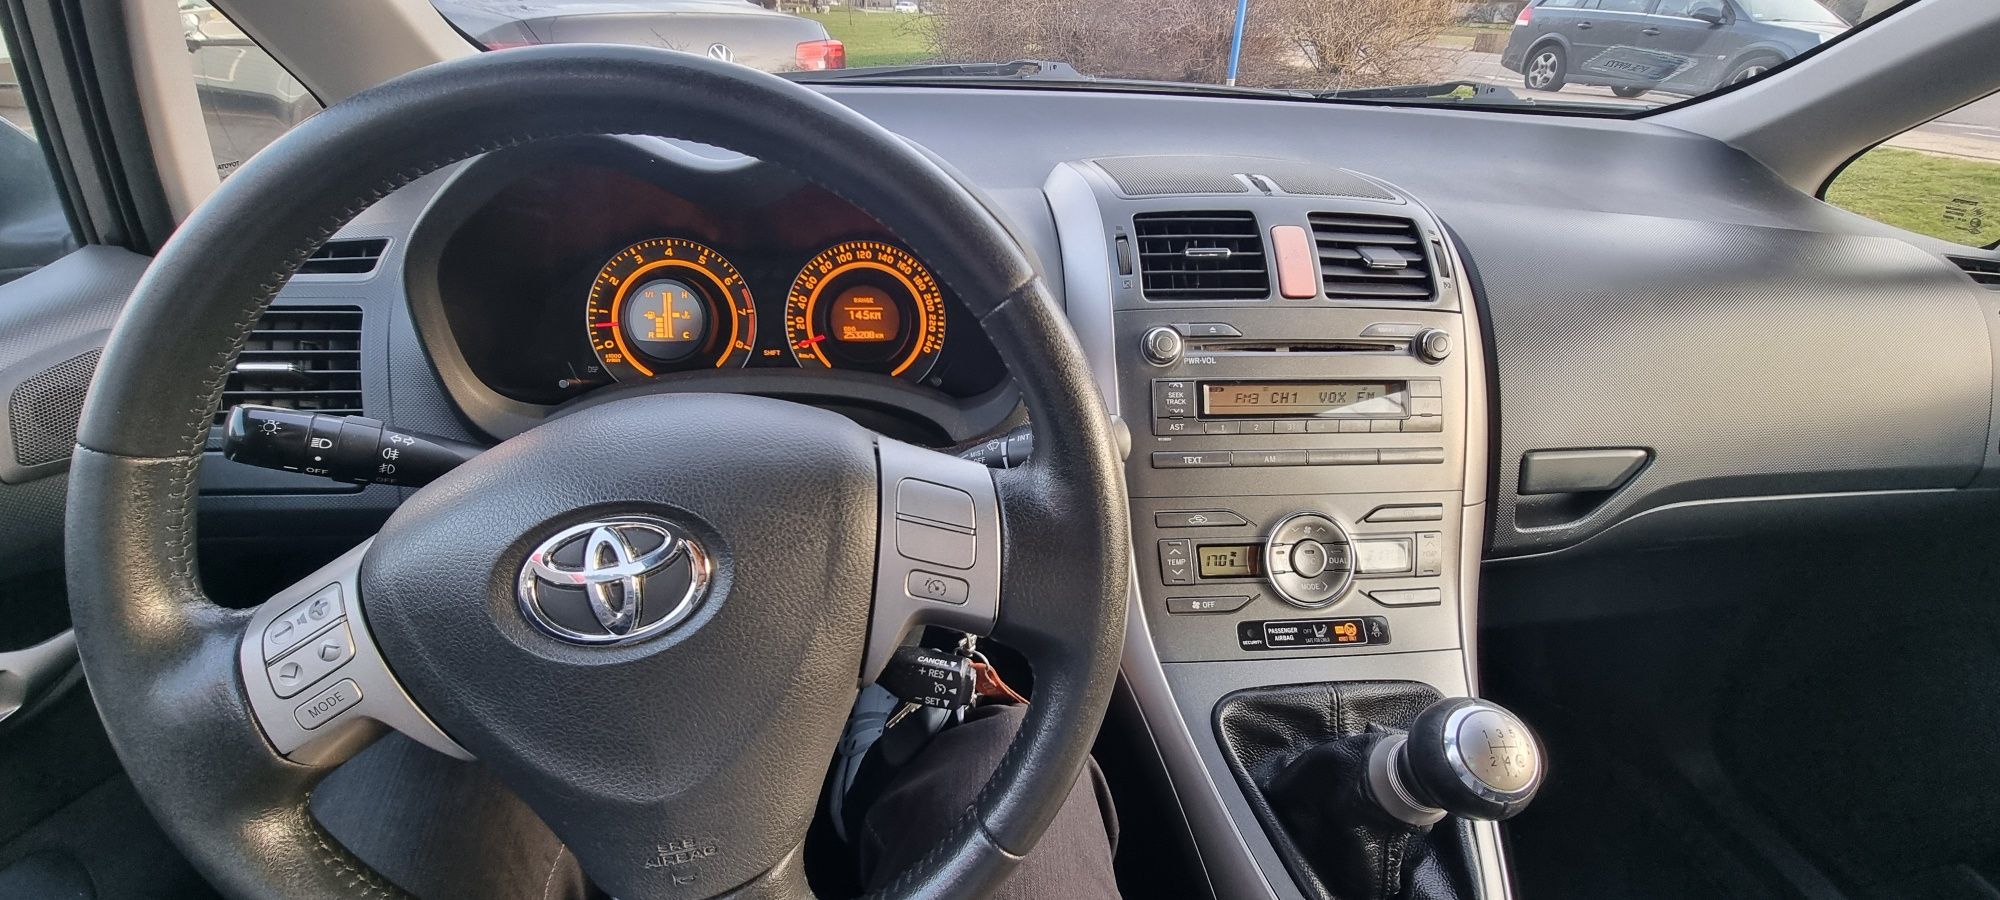 Toyota Auris 1.6 124KM 253000km warszawa możliwa zamiana